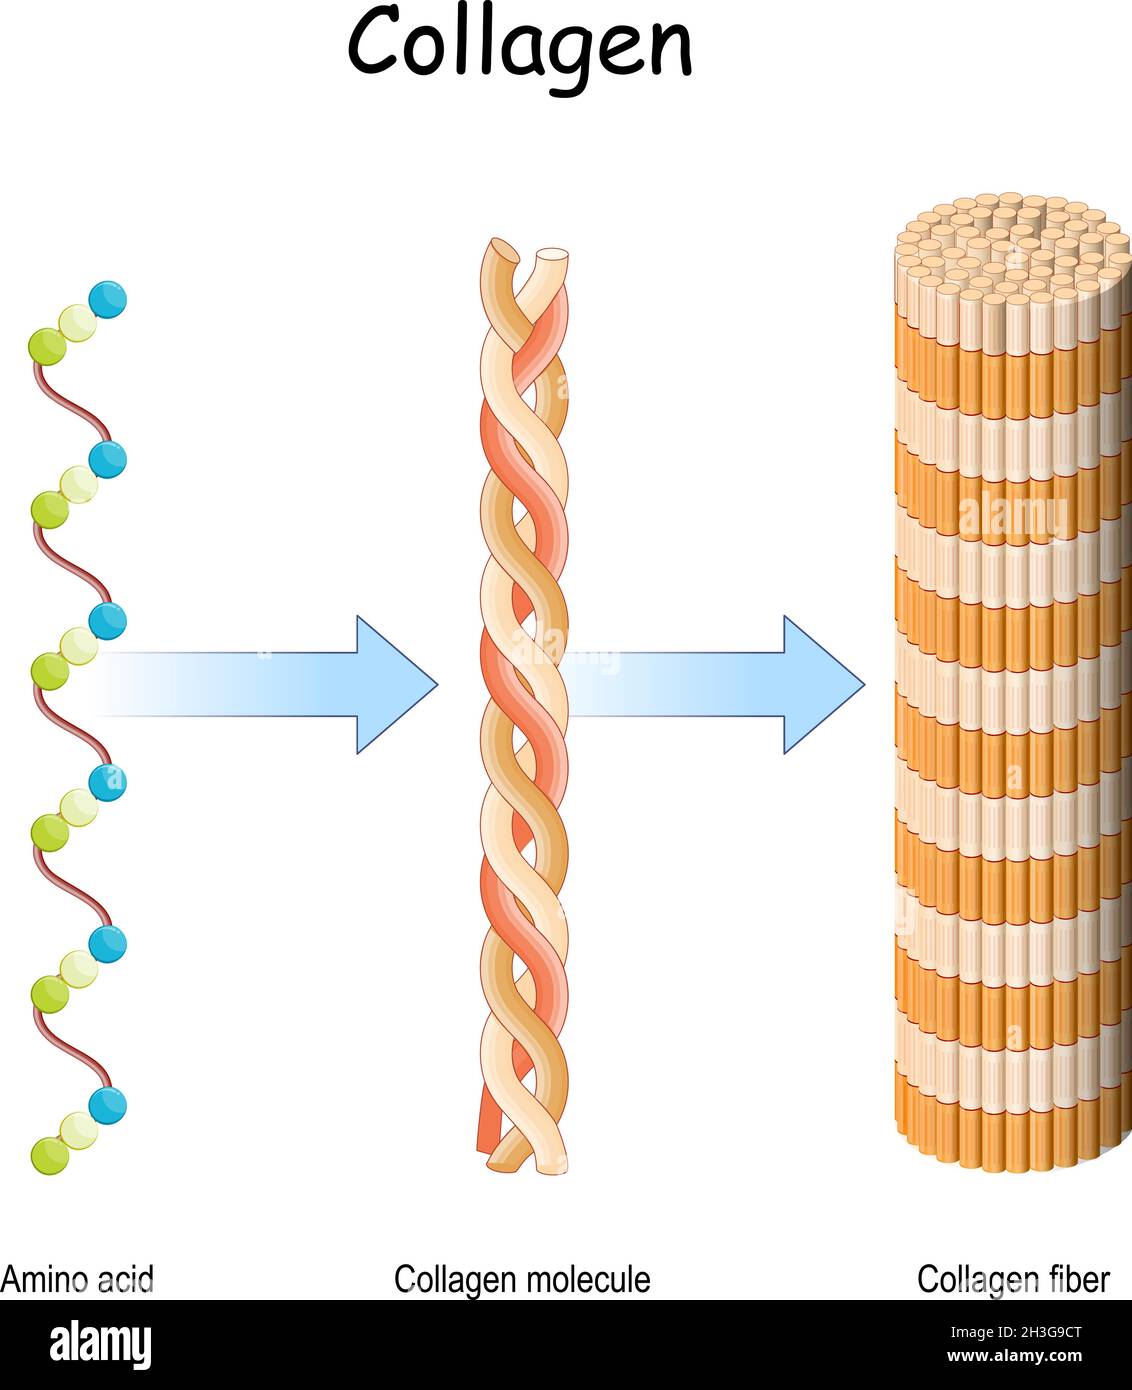 Kollagenmolekül. Struktur einer Kollagenfaser. Aminosäuren, die miteinander verbunden sind, um eine dreifache Helix aus langgestrecktem Fibril zu bilden. Stock Vektor